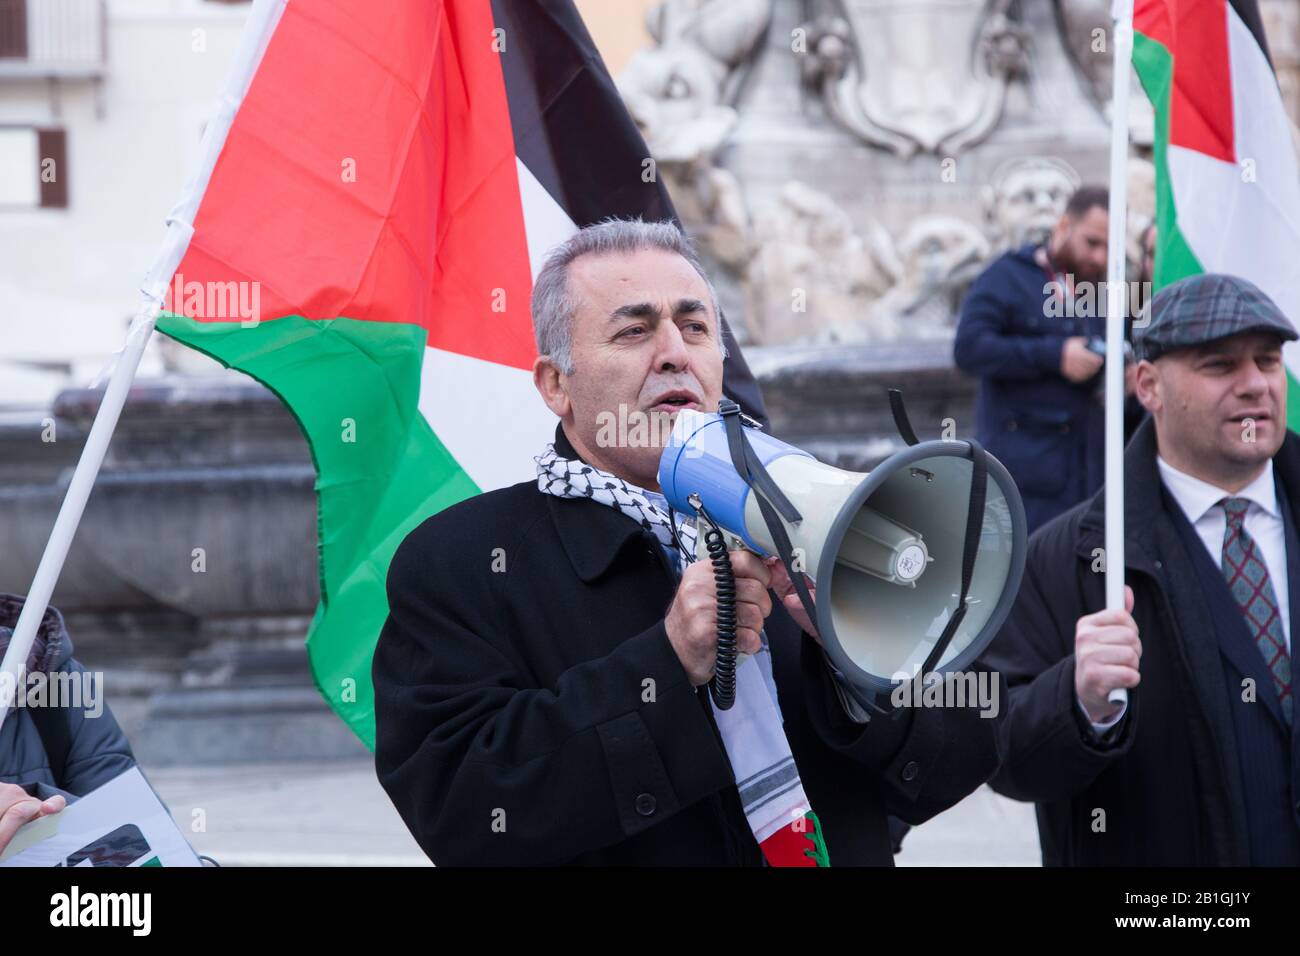 FLASHMOB à Rome devant le Panthéon pour protester contre l'occupation israélienne et les colonies illégales dans toute la Palestine et demander la réouverture de la rue Shuhada à Hébron. (Photo De Matteo Nardone/Pacific Press) Banque D'Images